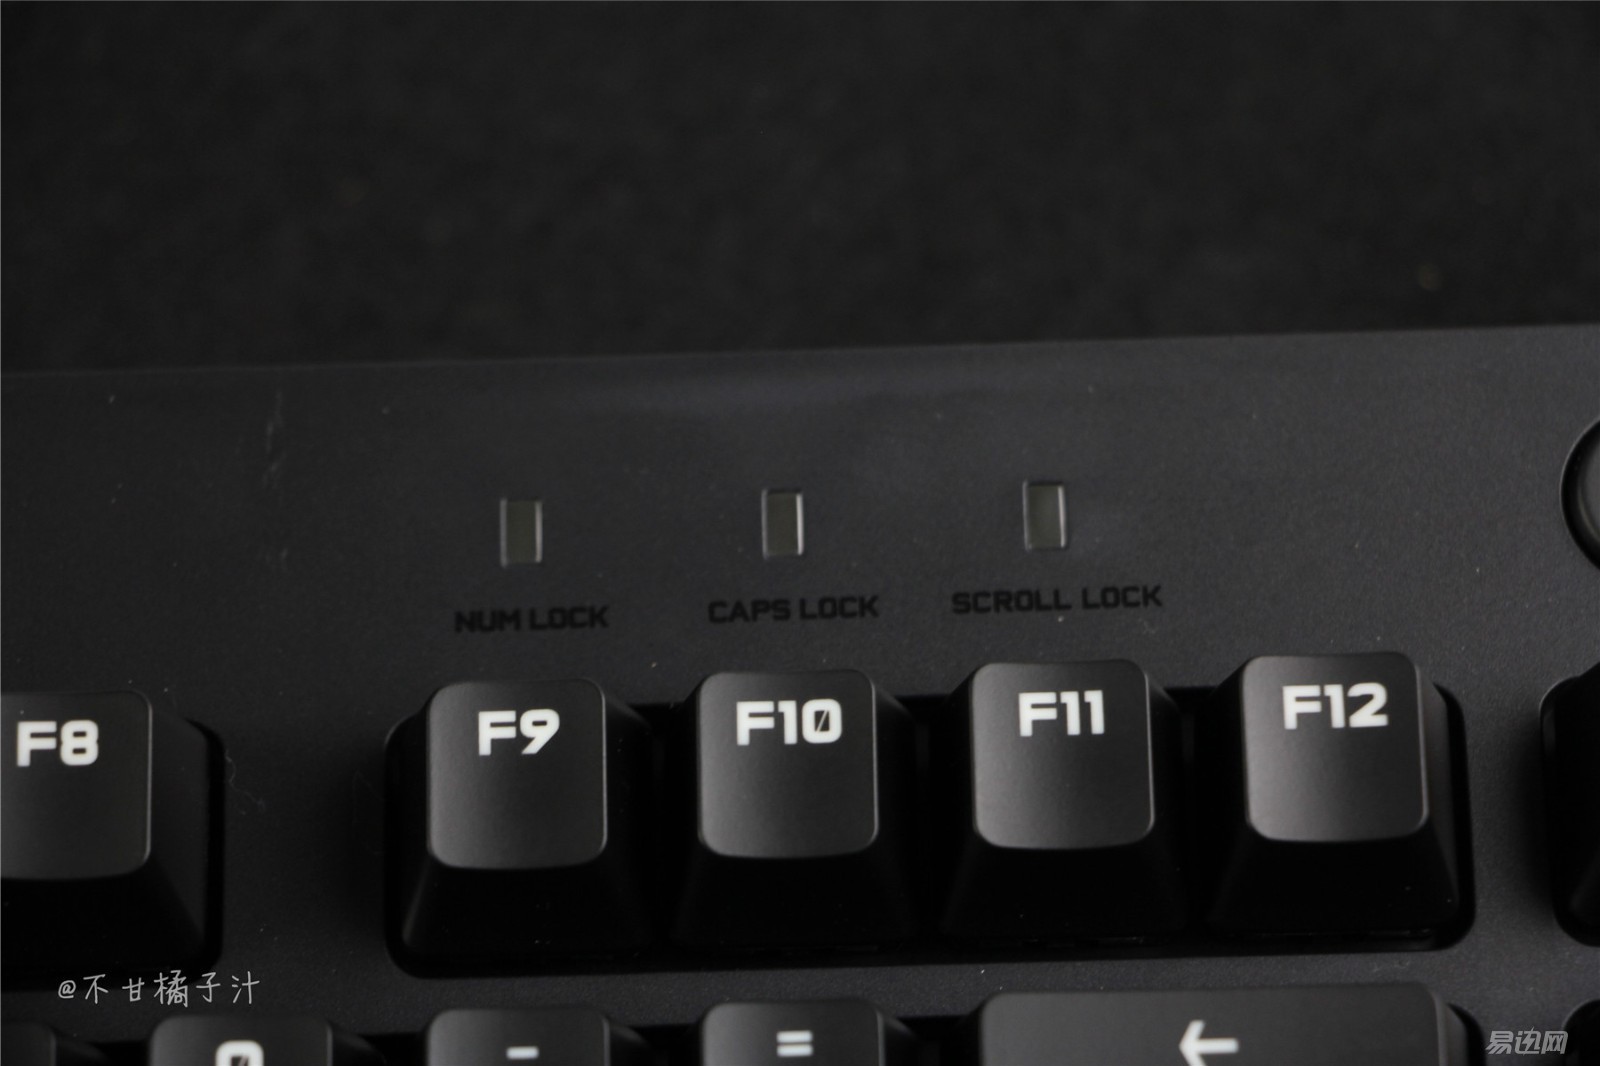 通常键盘的指示灯都在右上角,不过因为这款多媒体按键占用了位置,指示